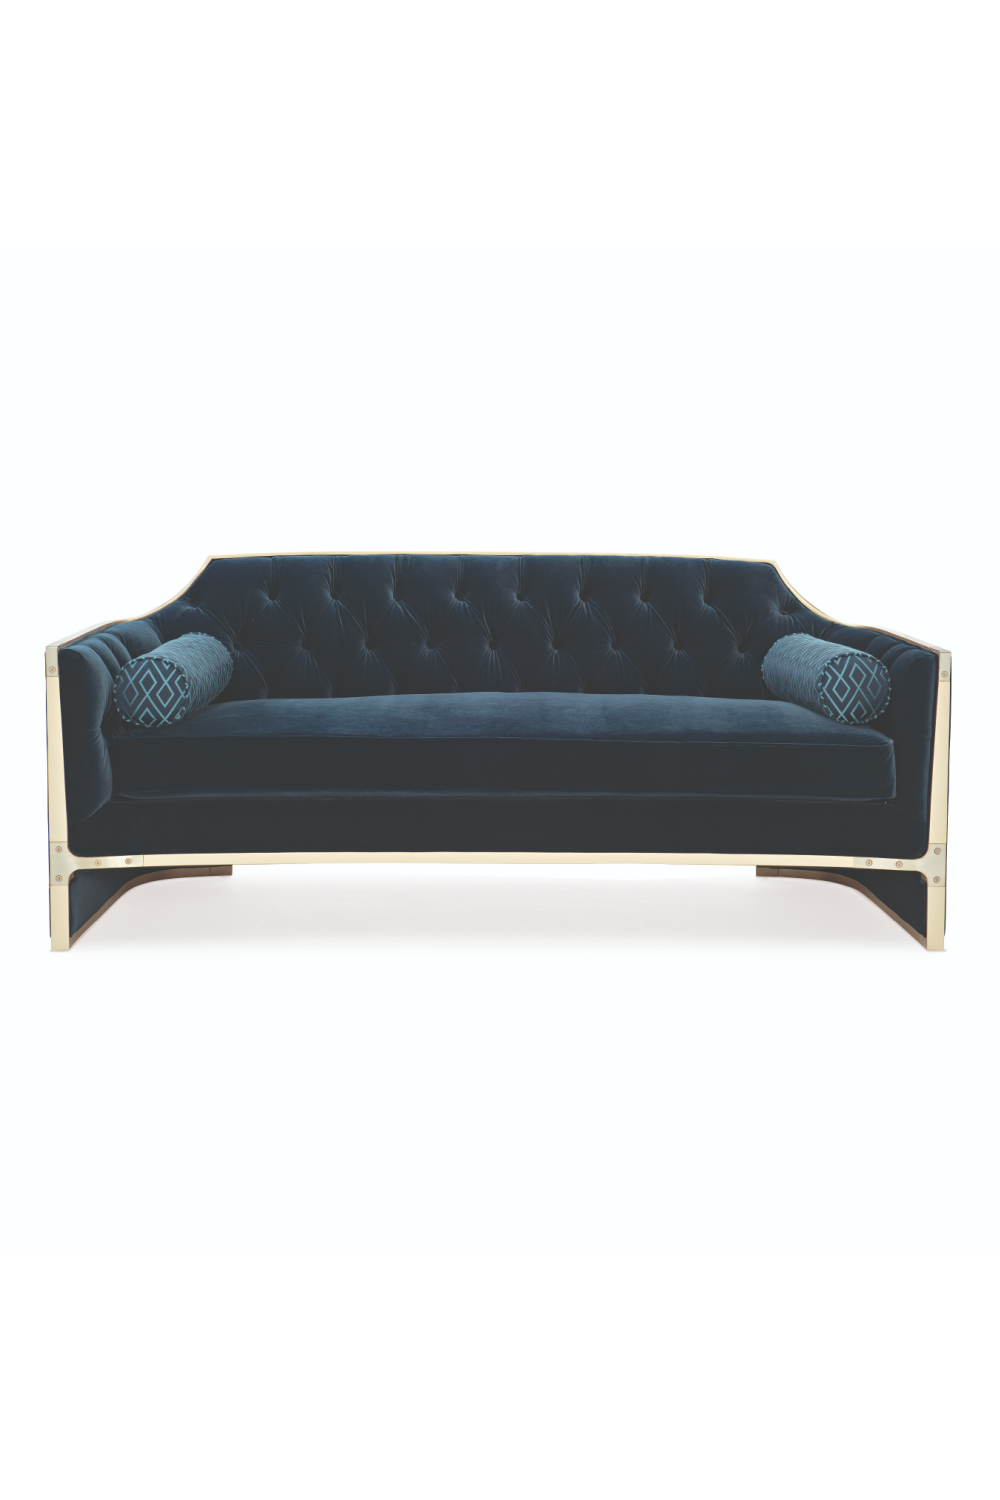 Blue Tufted Modern Sofa | Caracole The Cat's Meow | Oroa.com